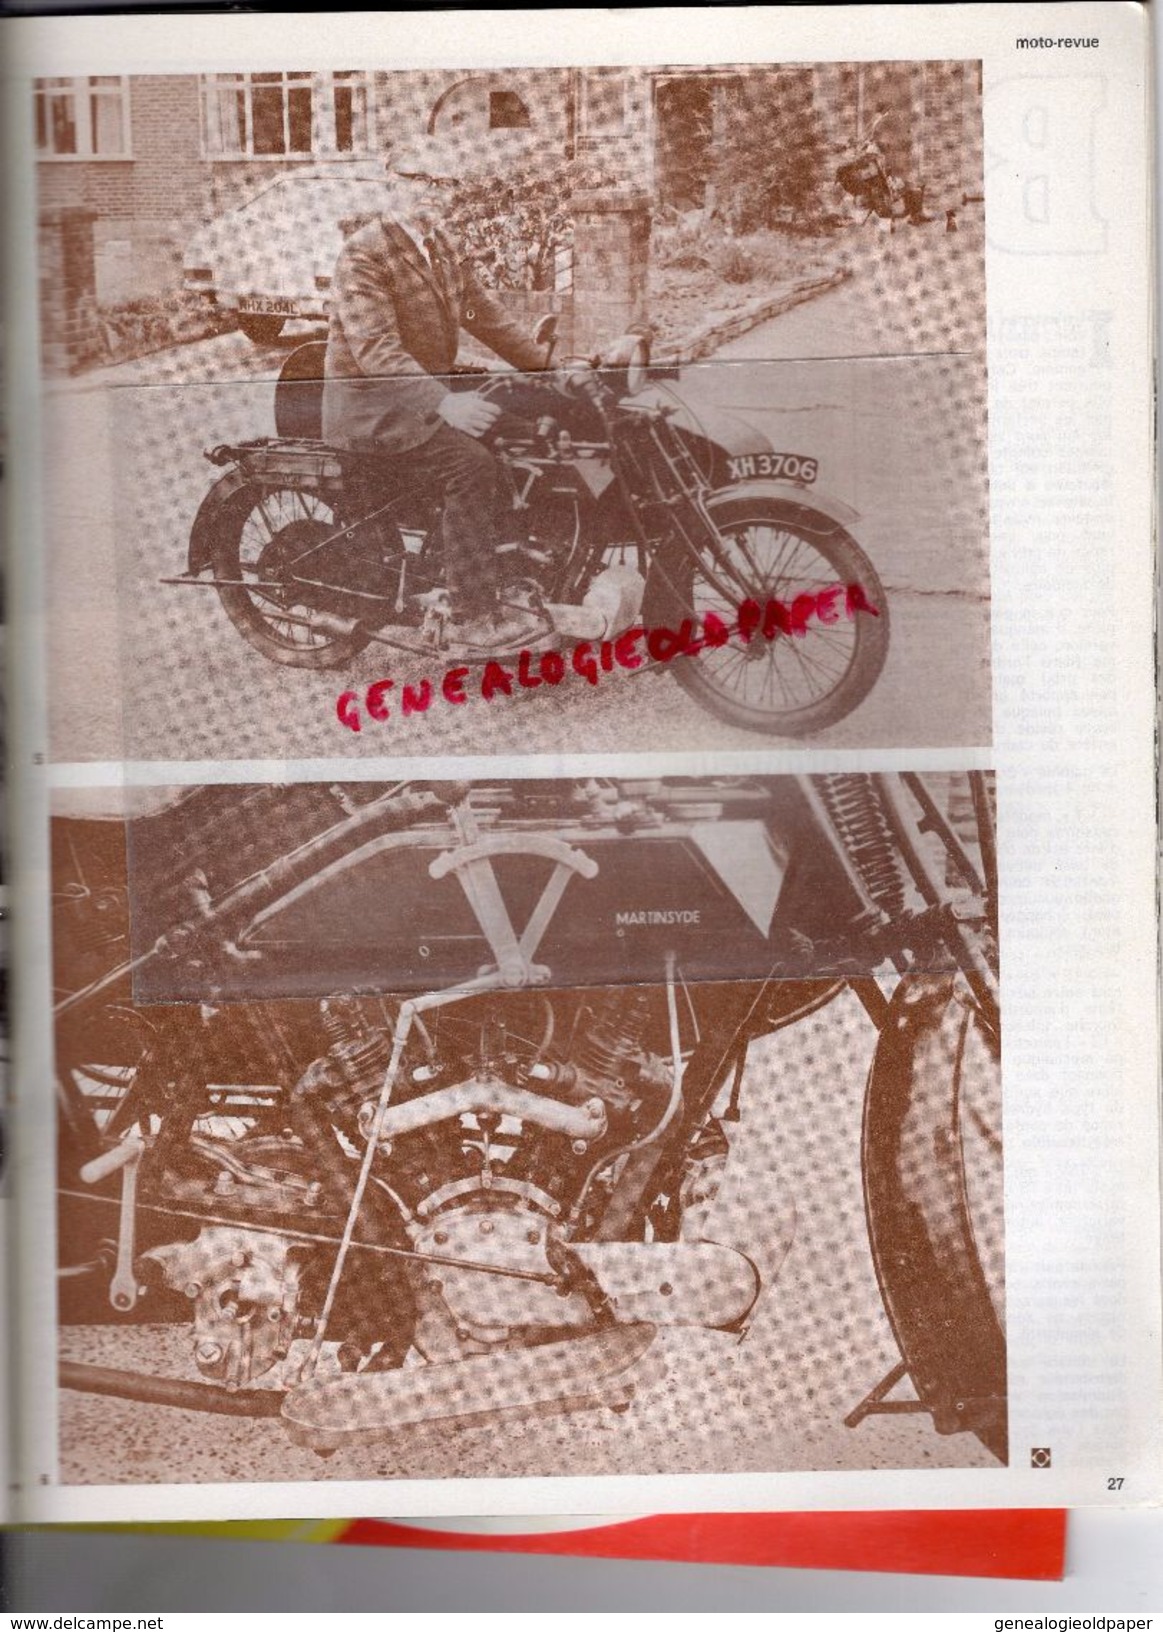 MOTO REVUE -N° 2125-18-5-1973-ESSAI LAVERDA 750 SF-TOUR DE FRANCE-HOCKENHEIM READ-MARLBORO-NOGARO-DOUGLAS 600-GILERA - Motorrad